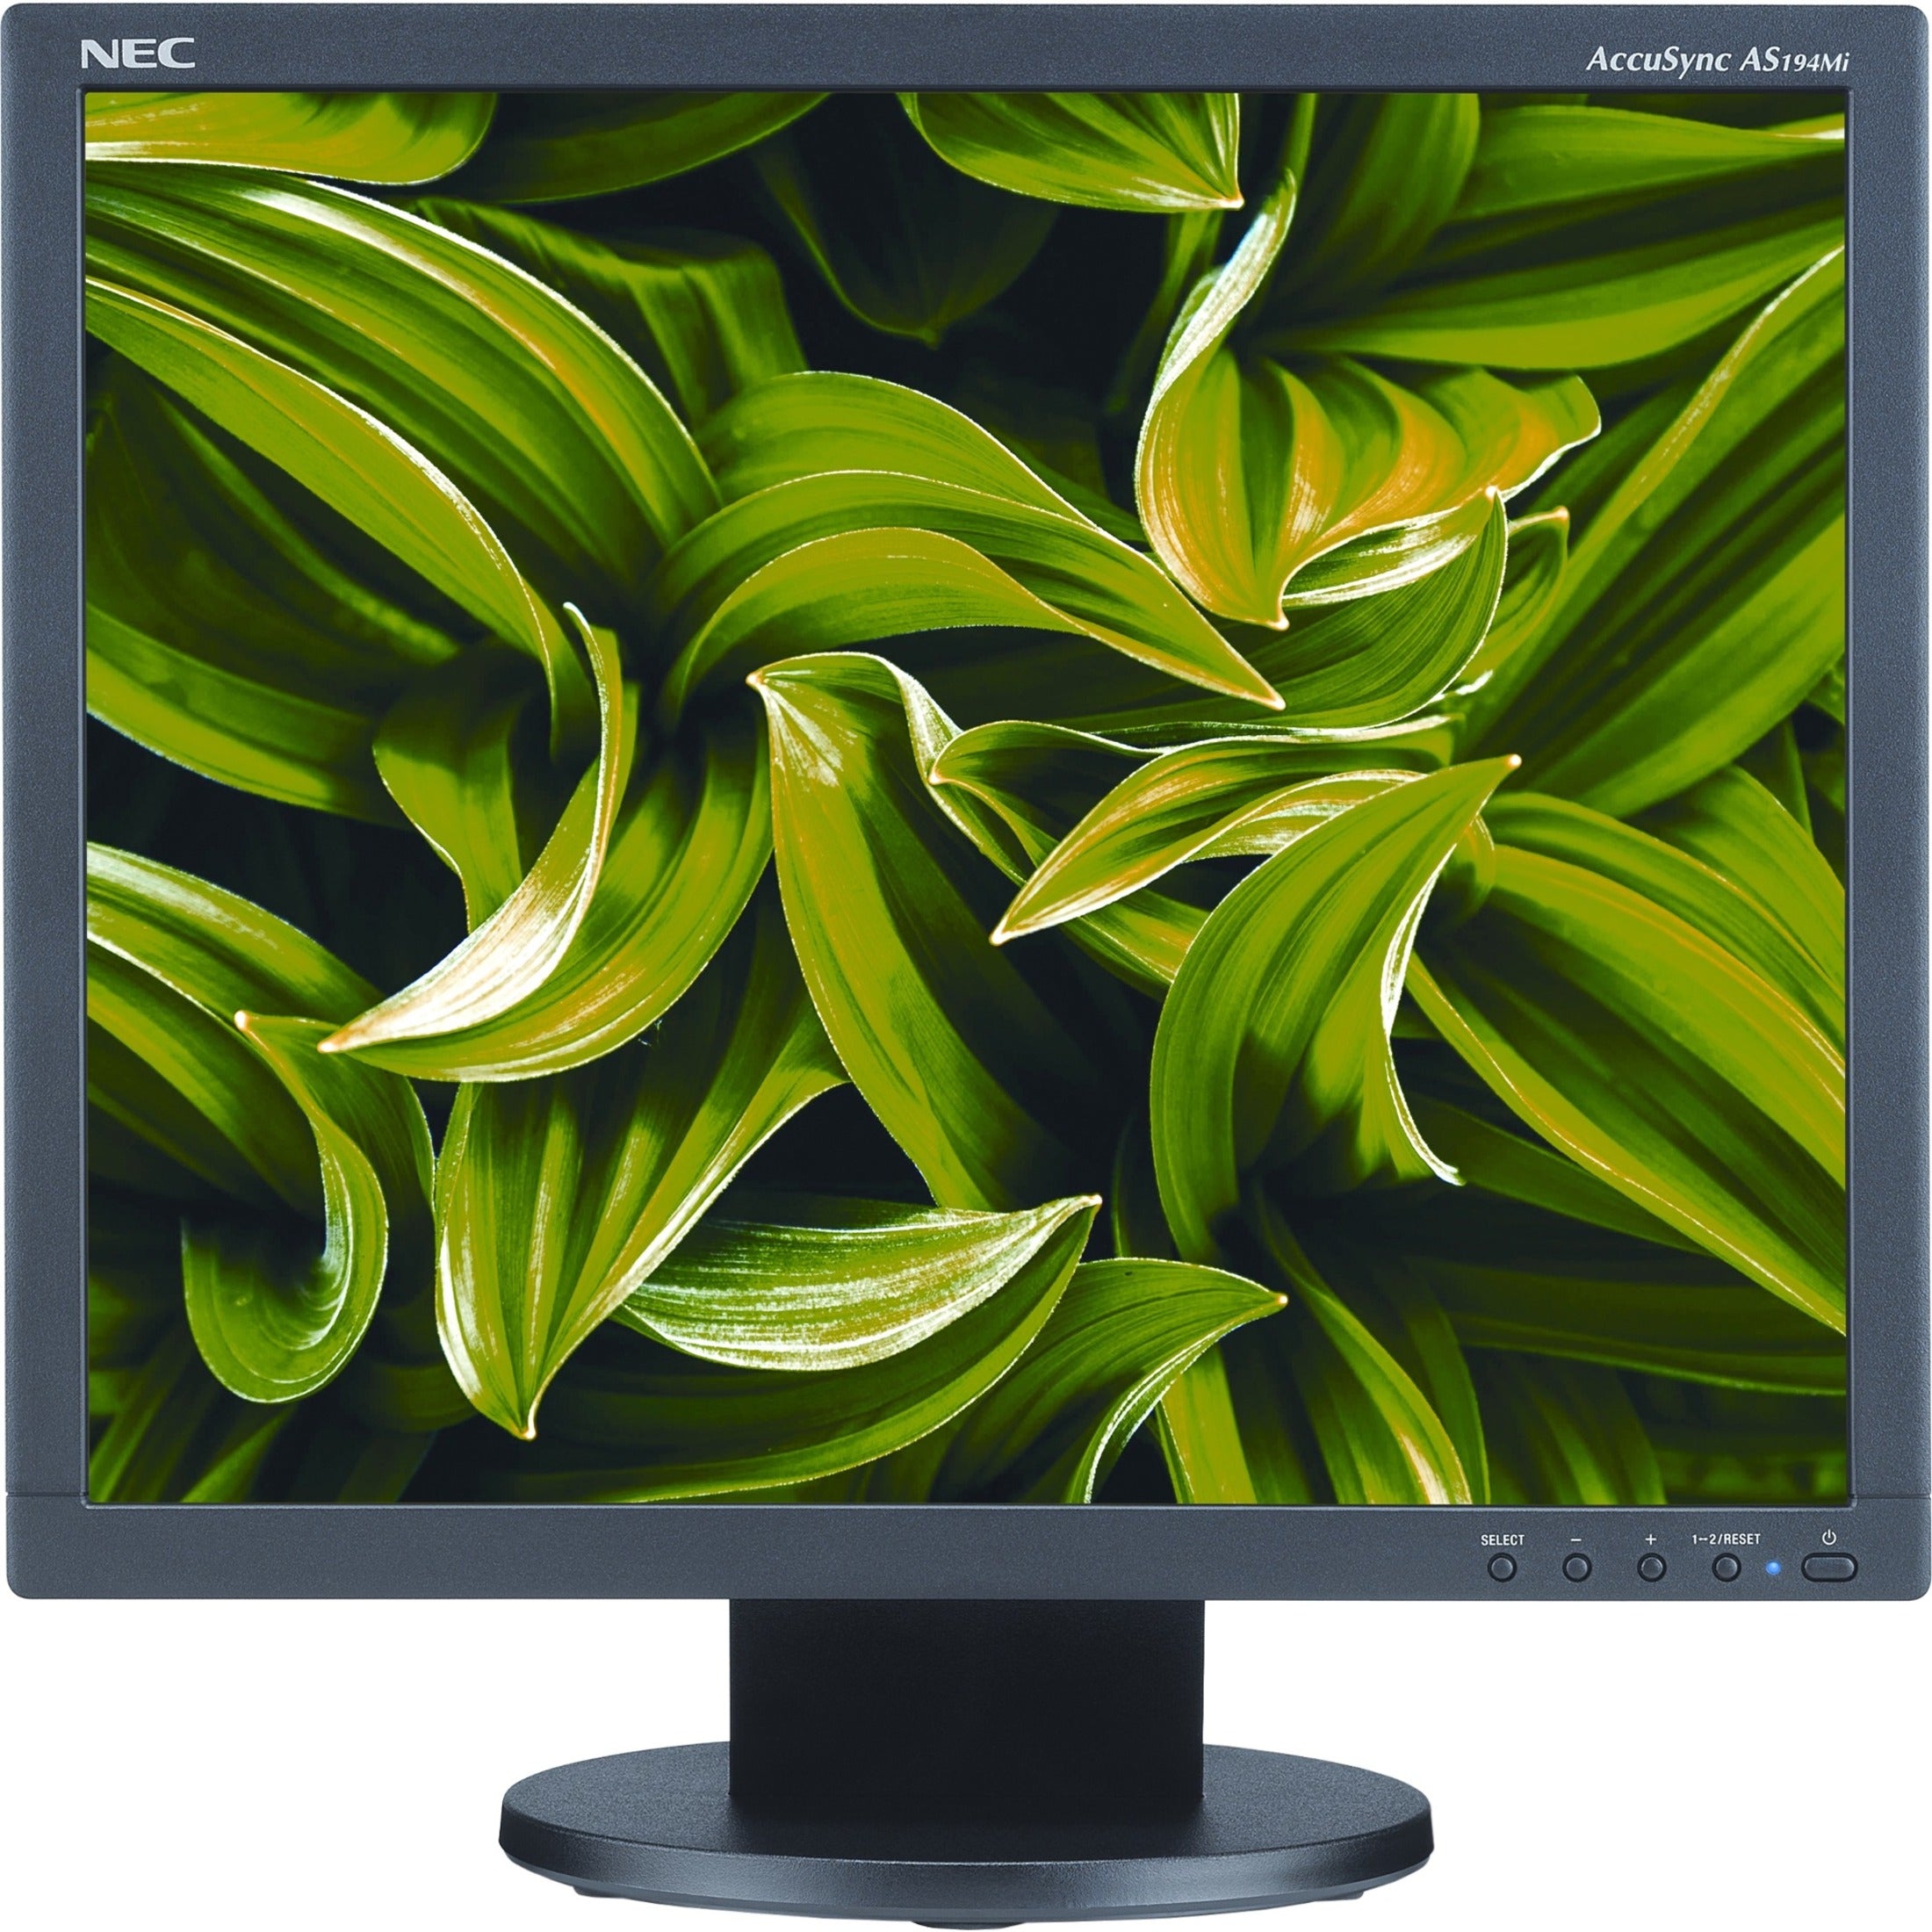 NEC Display AS194MI-BK AccuSync 19 LCD Monitor, SXGA, 5:4, 1280 x 1024, 75Hz, 1000:1, WLED, HDMI, DisplayPort